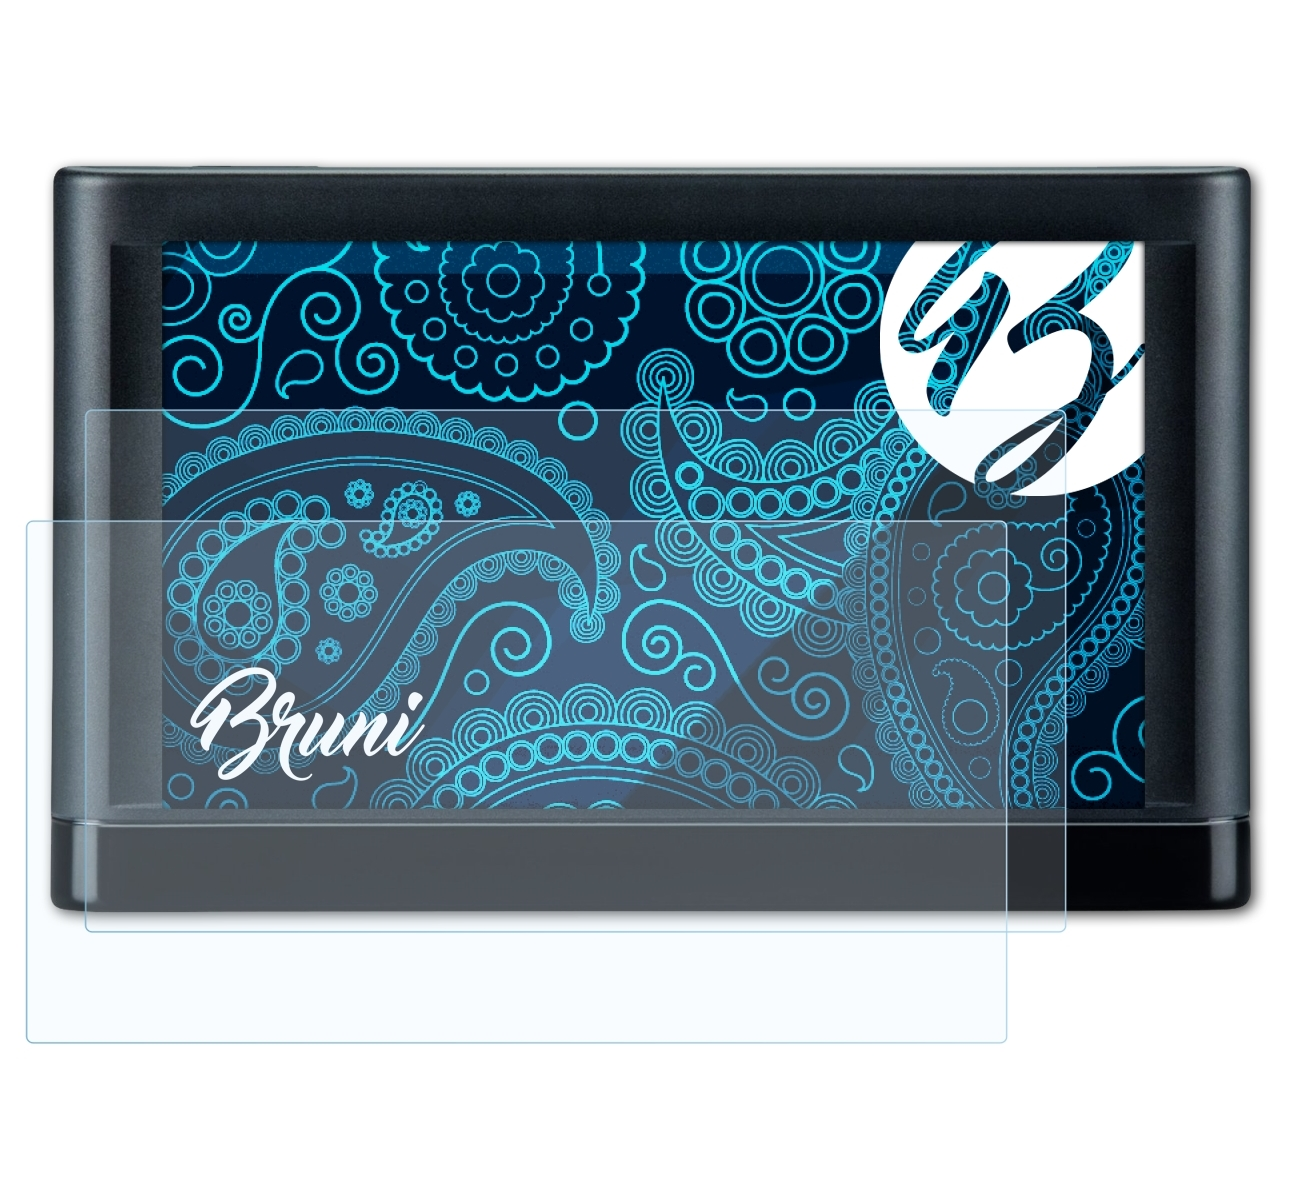 BRUNI 2x Basics-Clear Schutzfolie(für nüvi 66LMT) Garmin